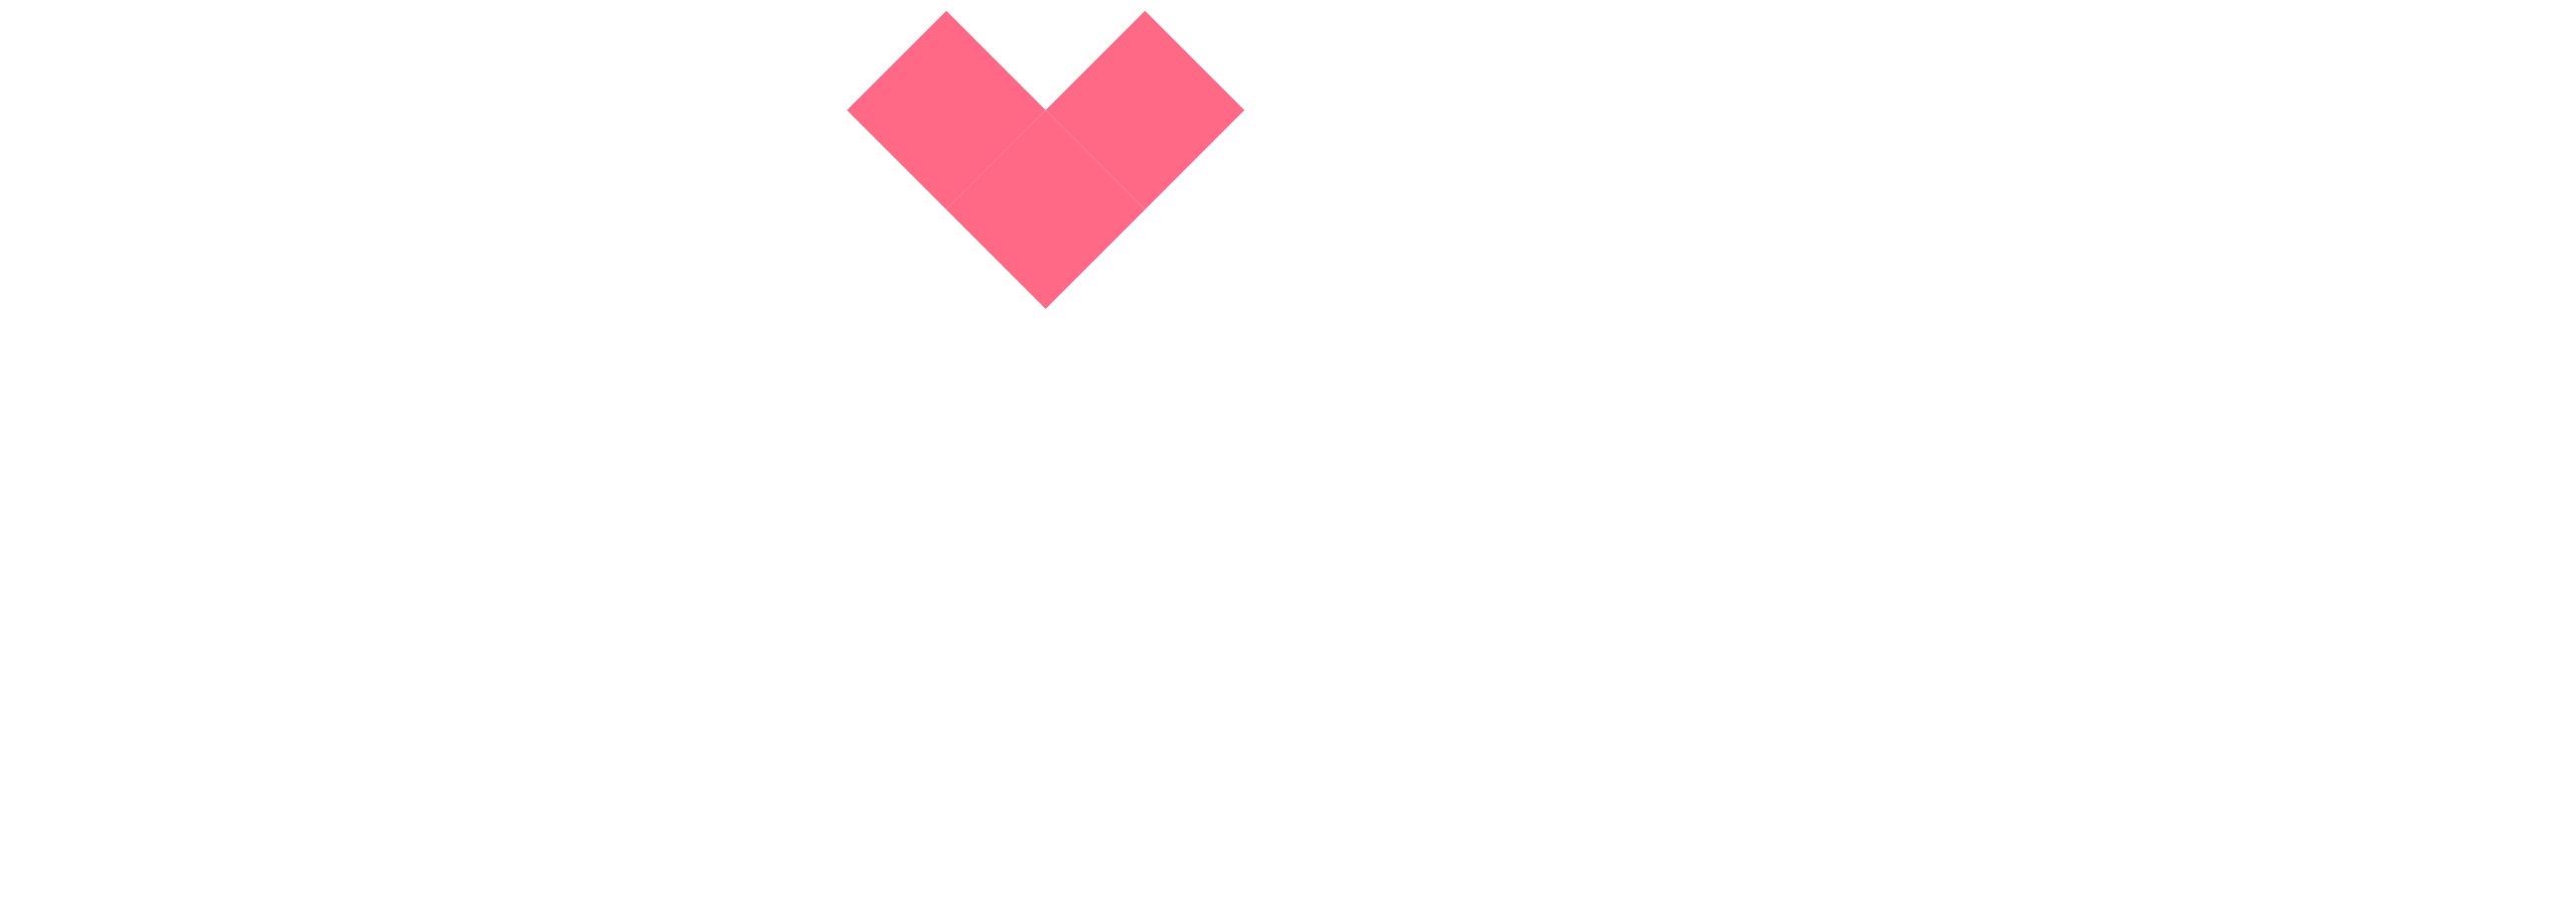 BdB | Bundesverband der deutschen Bibliotheksfreundeskreise e.V.